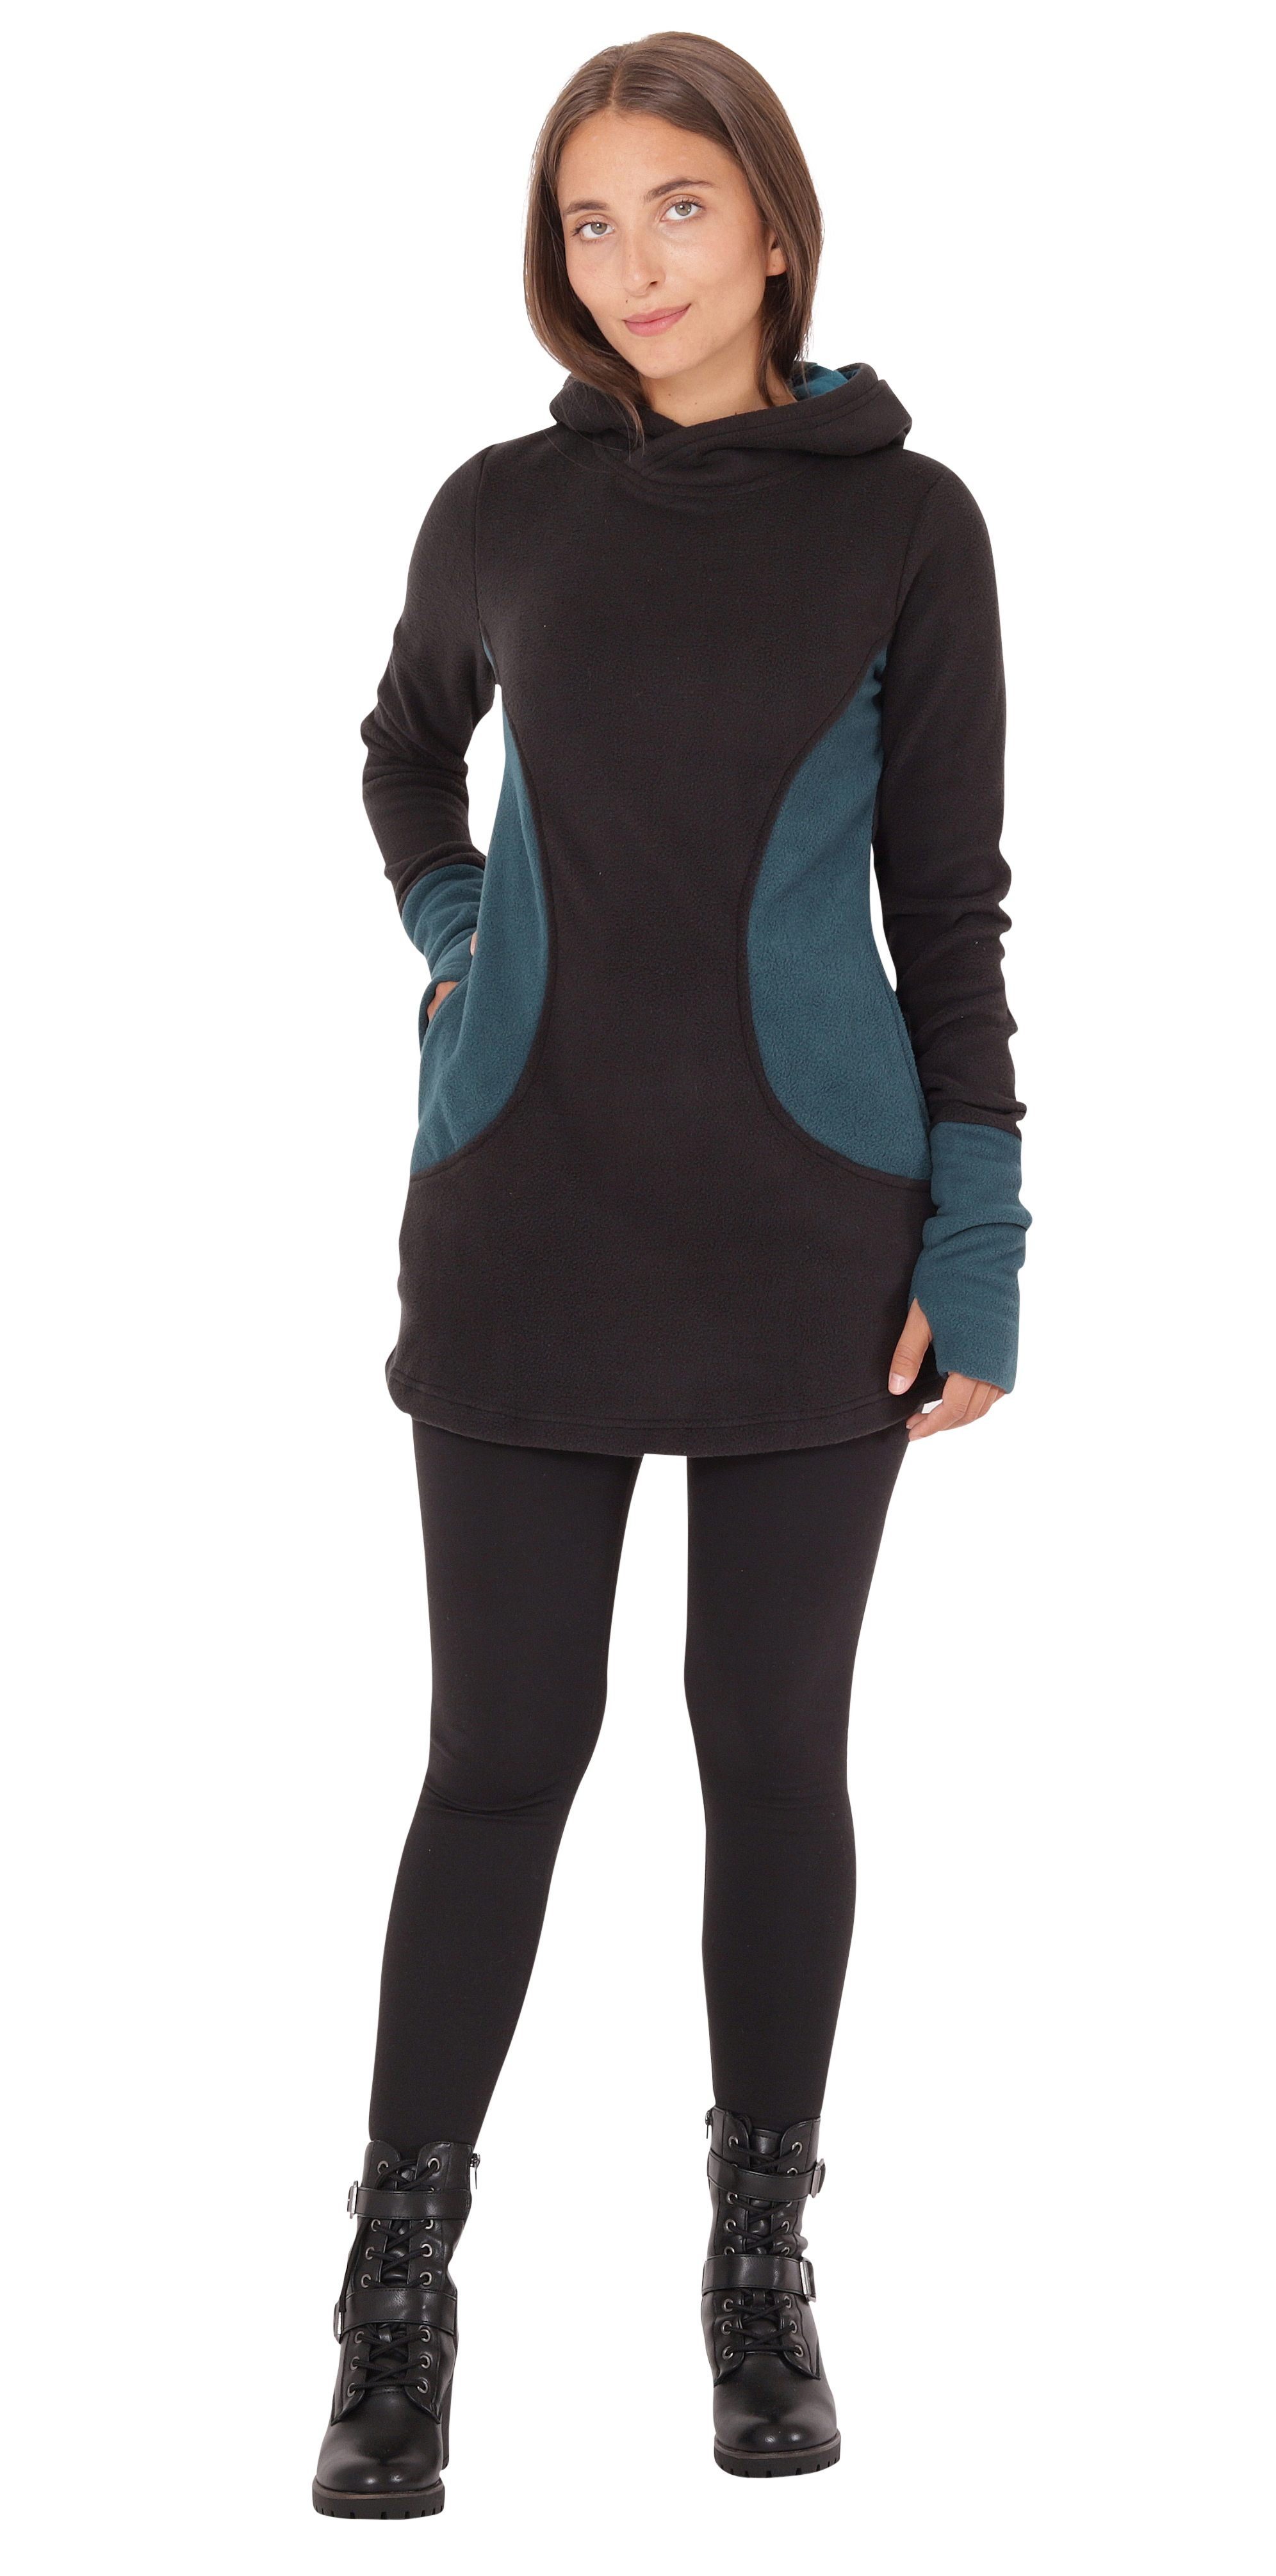 PUREWONDER Pullover und Kleid Fleece Blau dr12 Taschen Kapuzenpullover mit Kapuze und